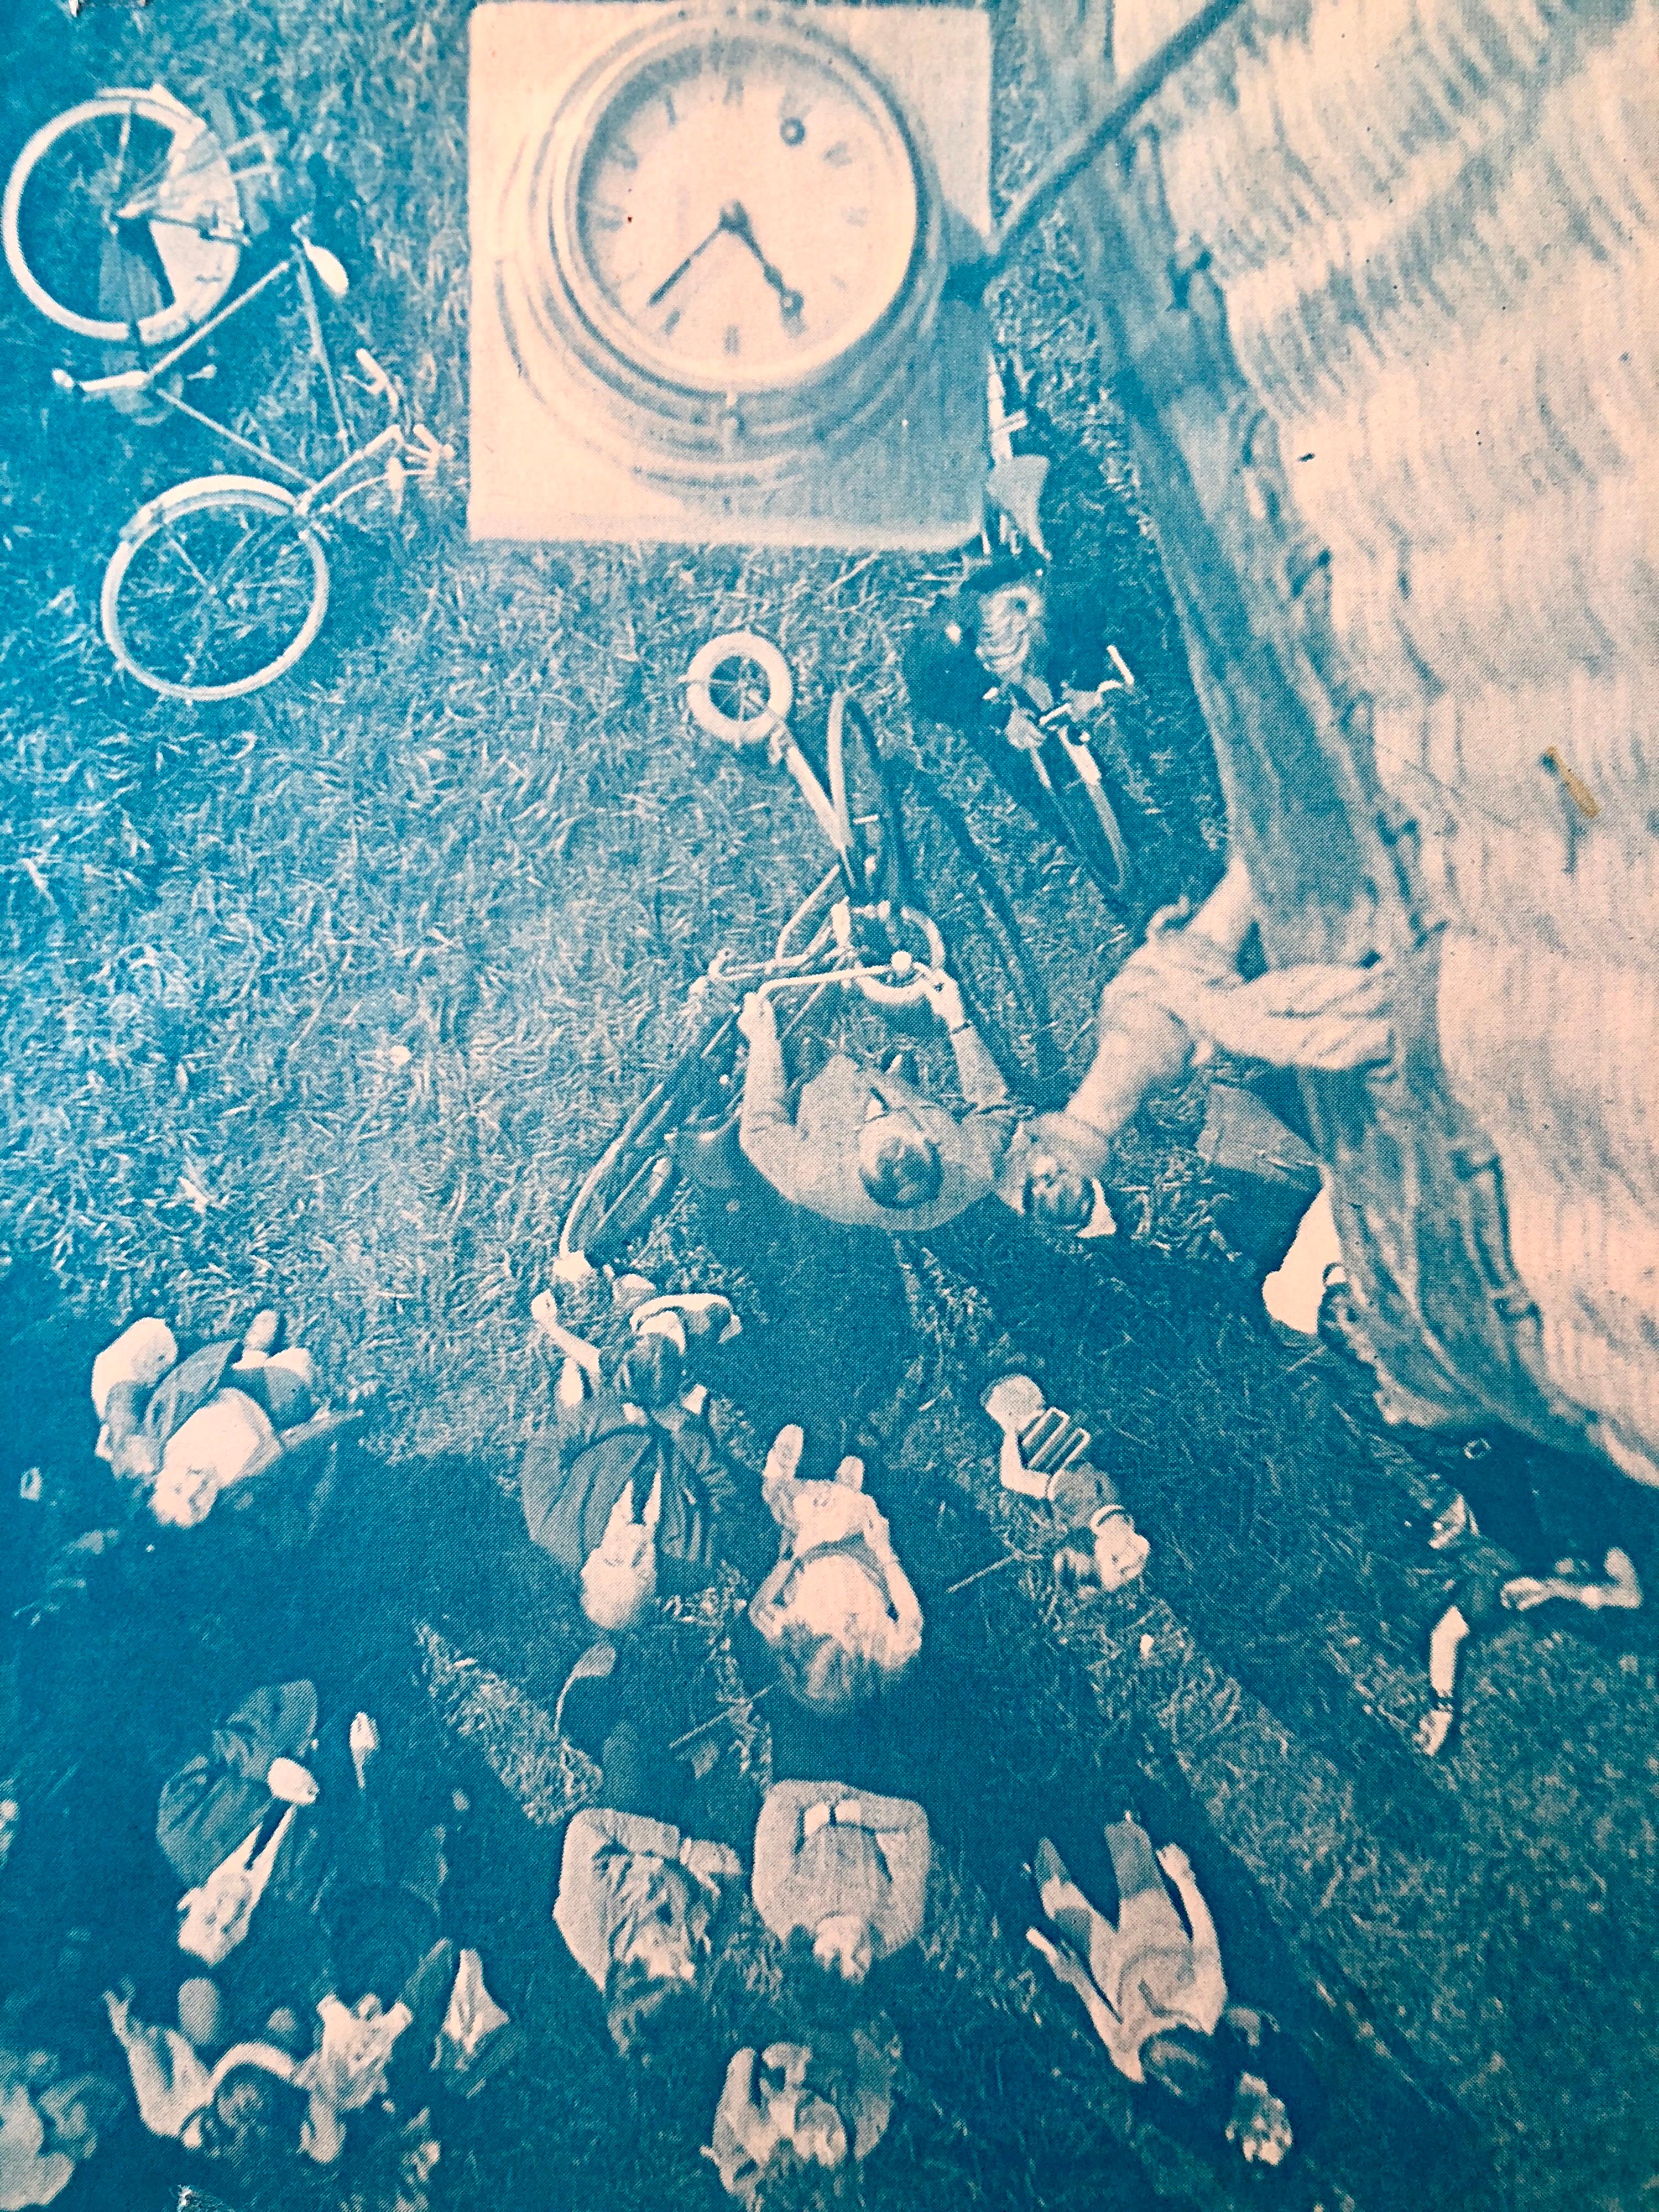 Dieses Bild ist in Rosa und Türkis gehalten und zeigt eine Uhr über einer Luftlandschaft von Amsterdam mit einem Fahrrad und trägt den Titel Lift Off Amsterdam.
SIMONS, Vera (1920 - 2012)
Vera Habrecht Simons, war eine deutsch-amerikanische